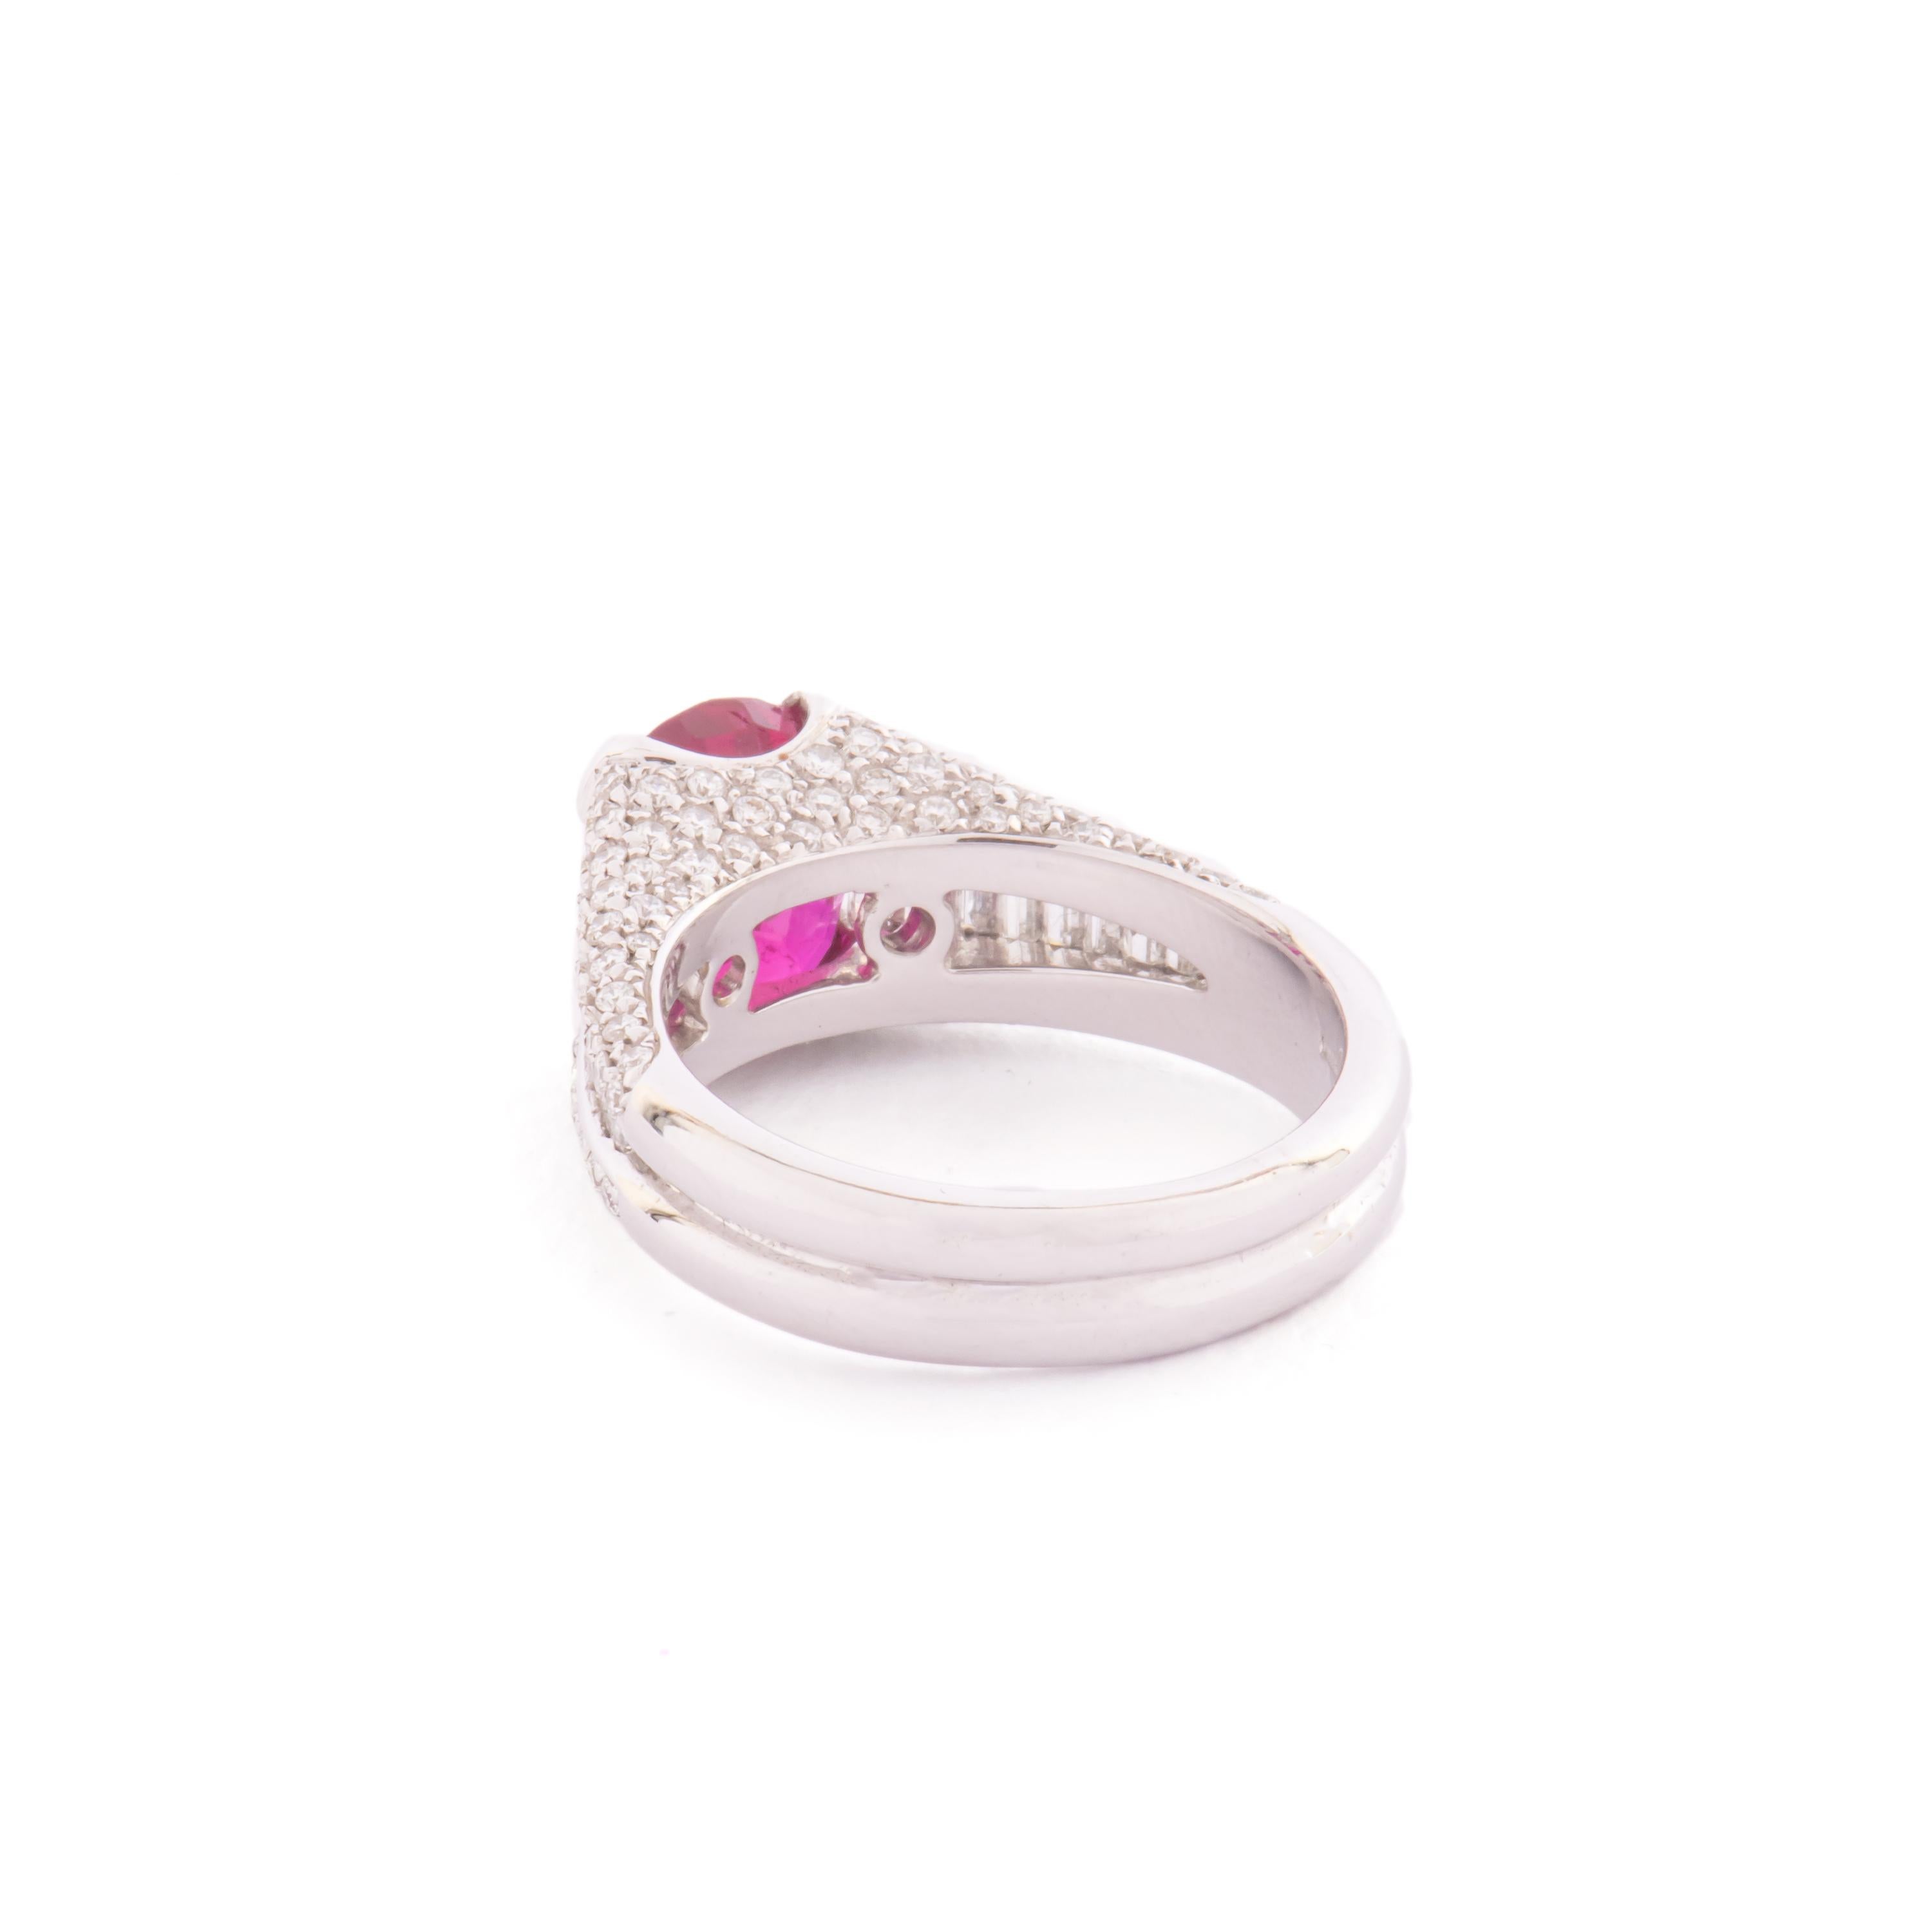 15 carat oval diamond ring